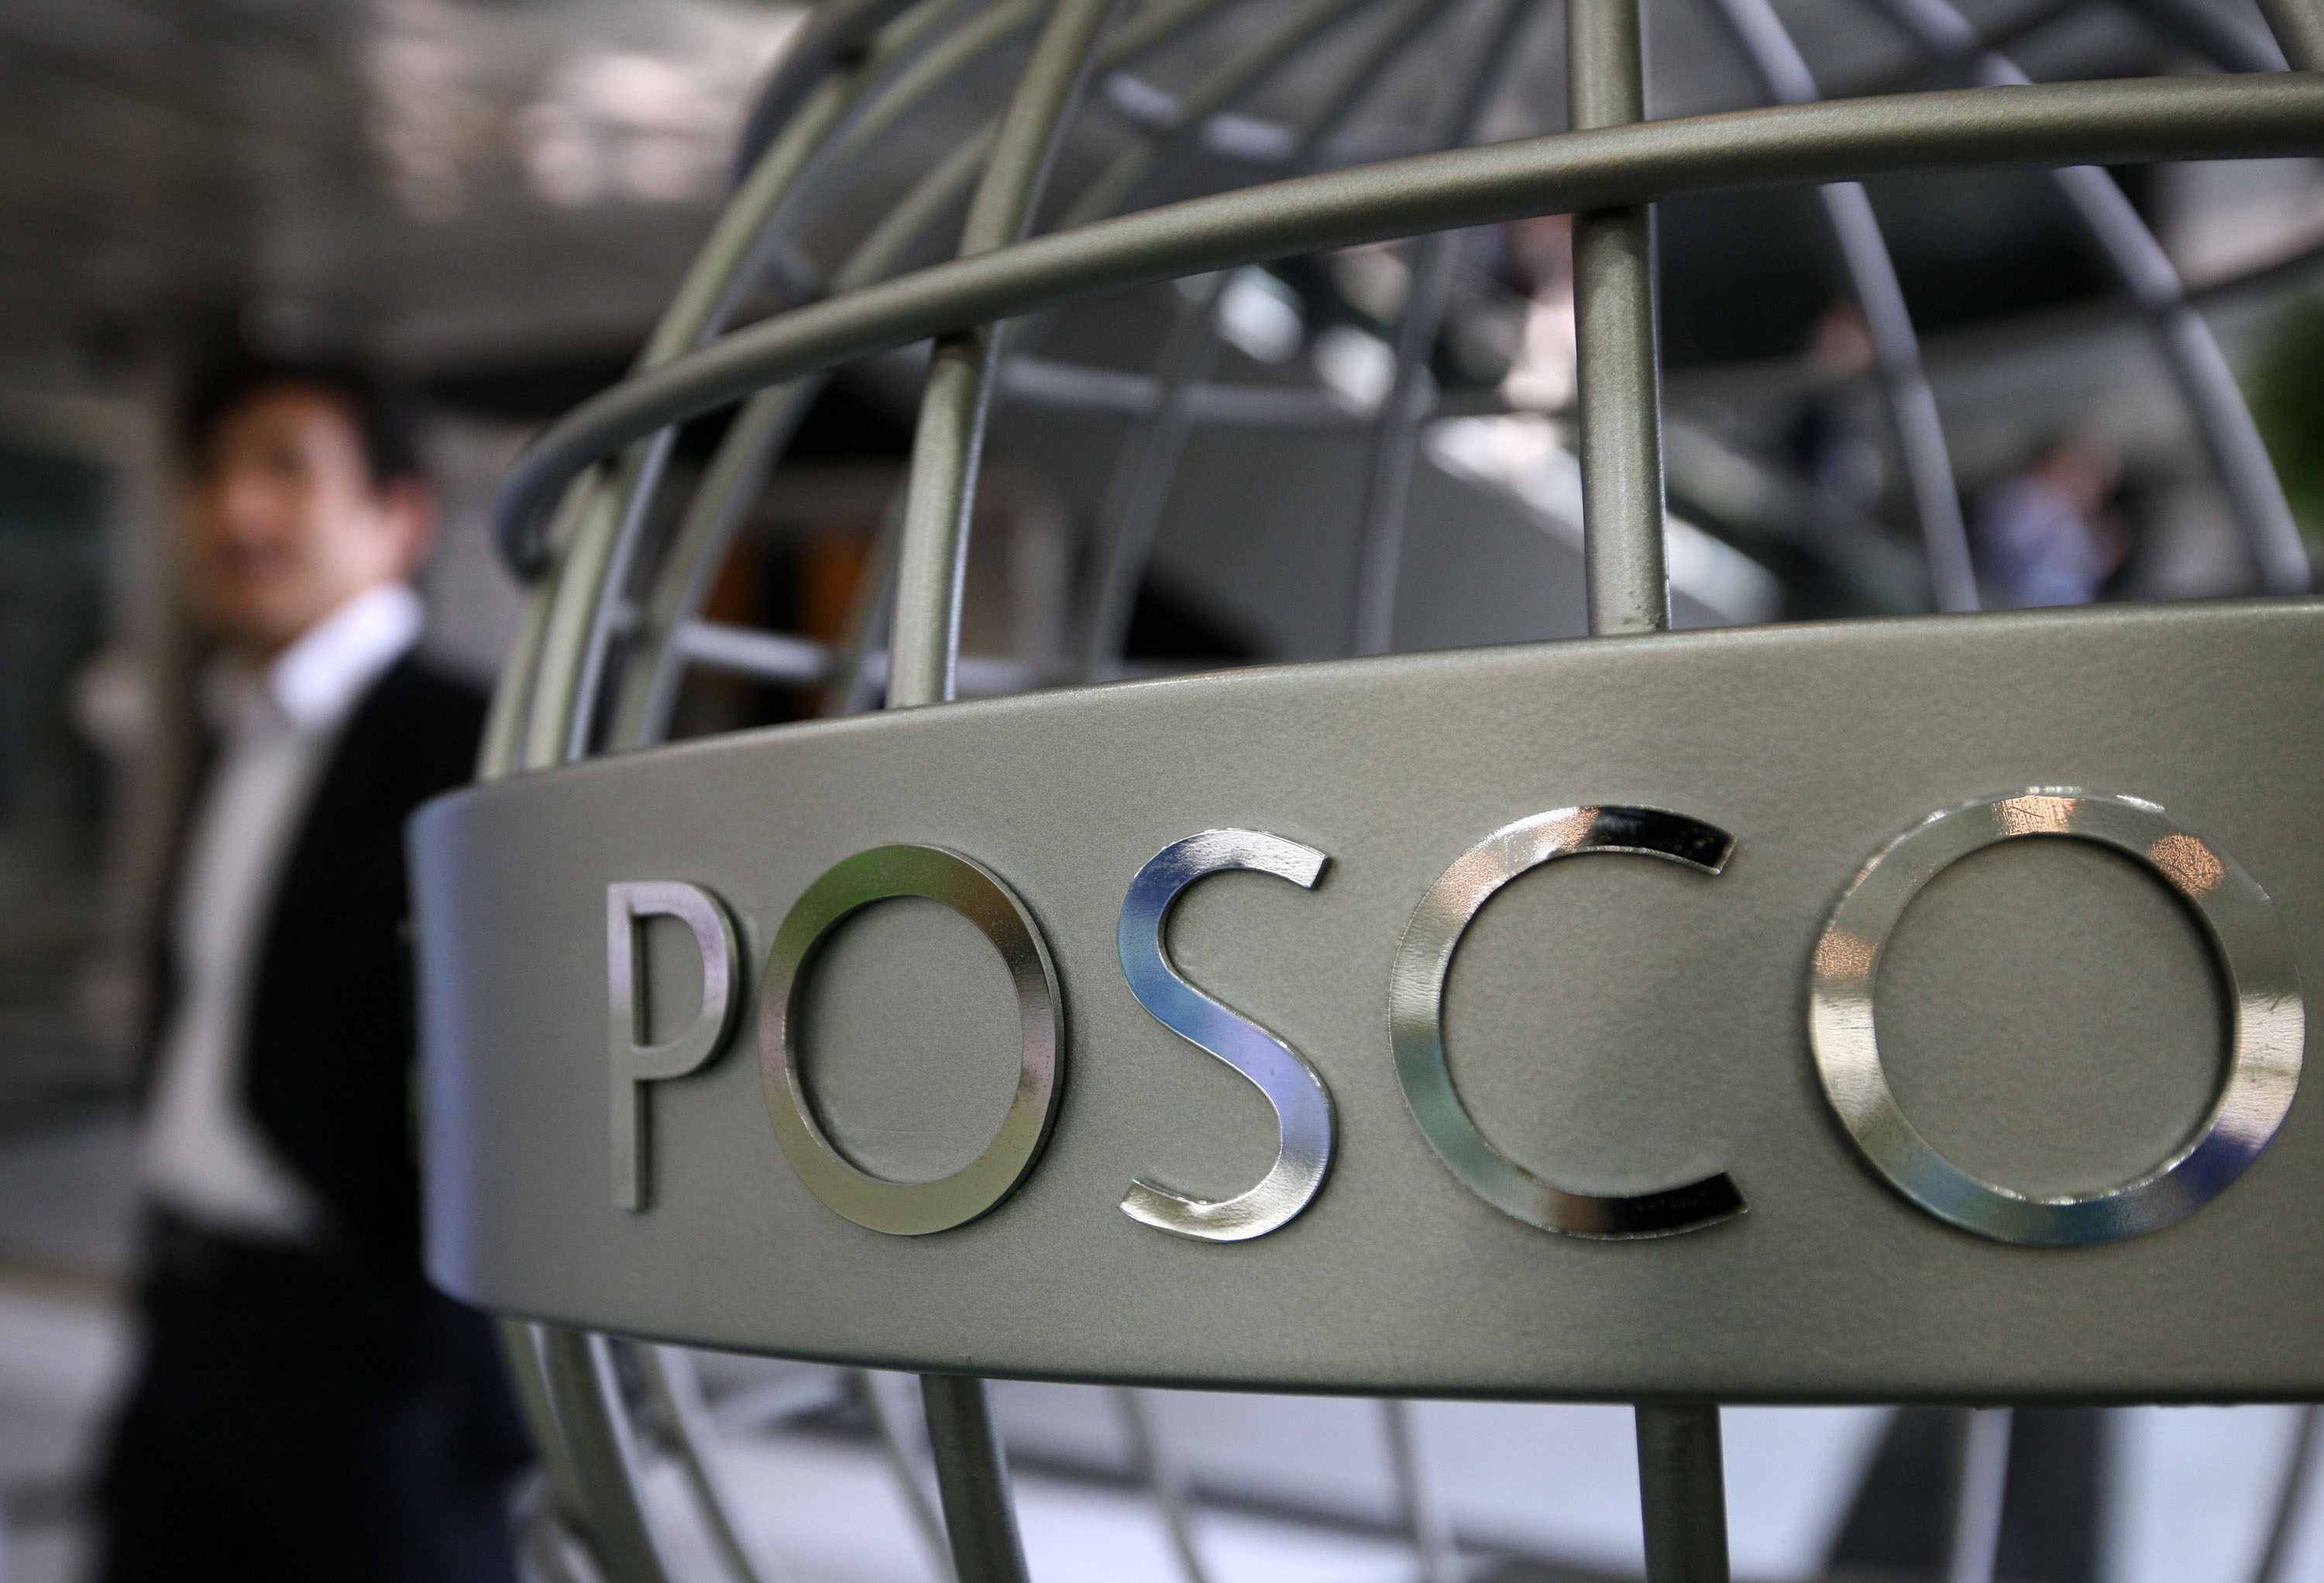 Koreli üreticiler ham madde alımı için Posco'ya yöneldi. 